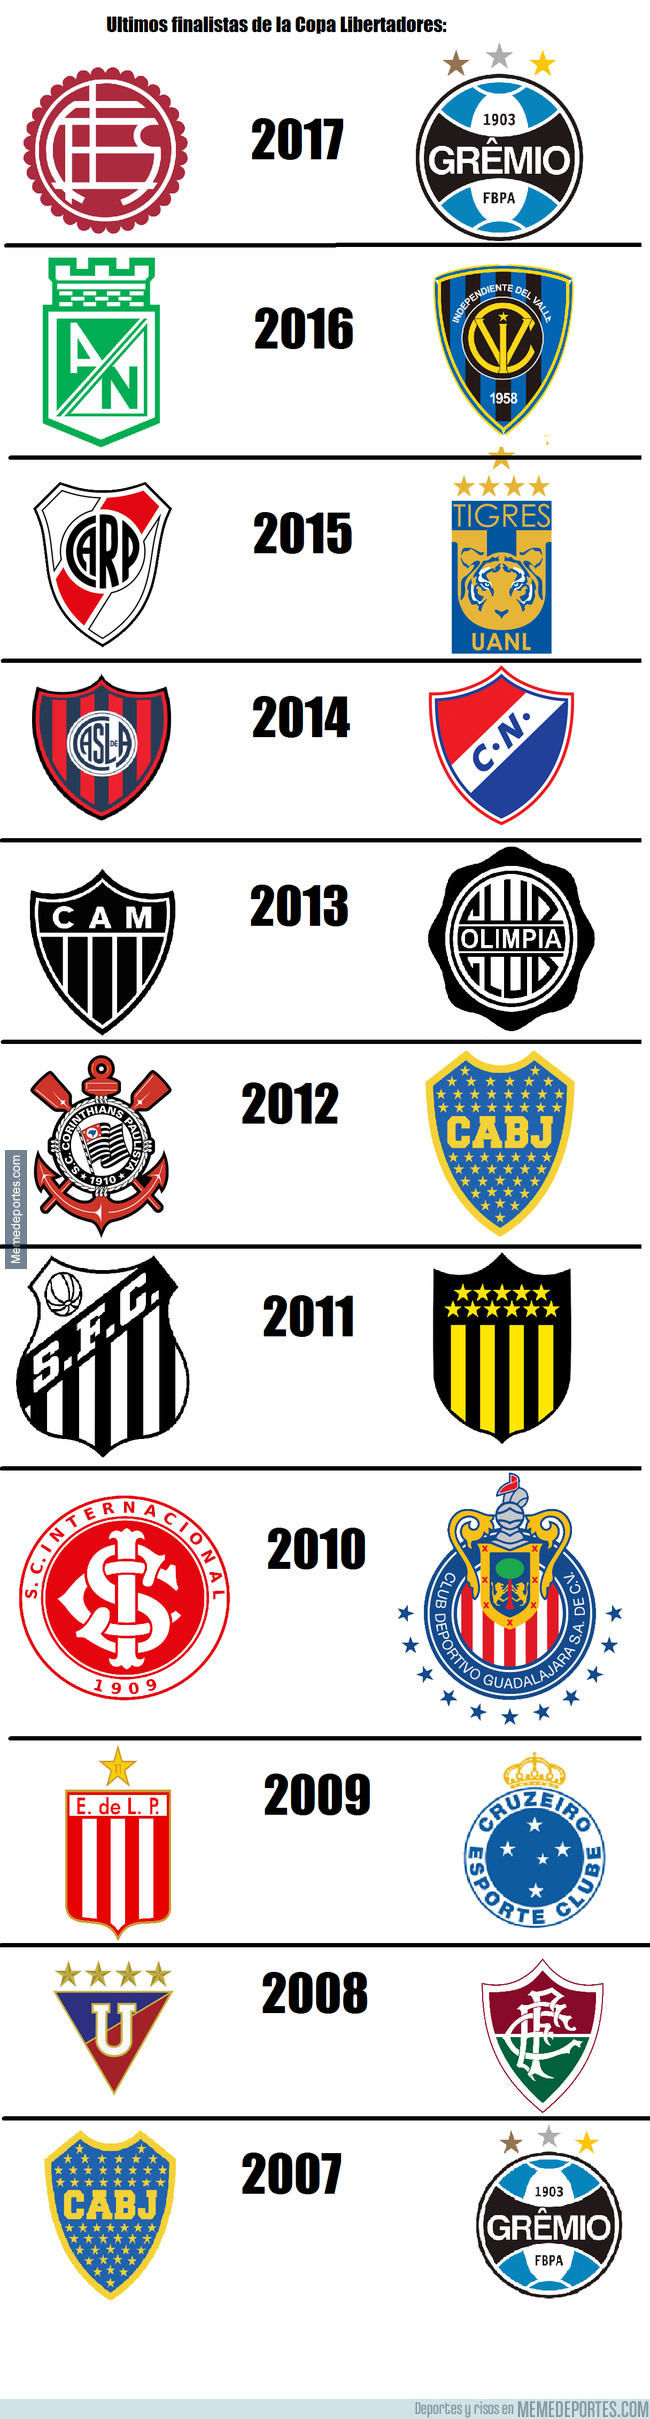 1006493 - Ultimos finalistas de la Copa Libertadores